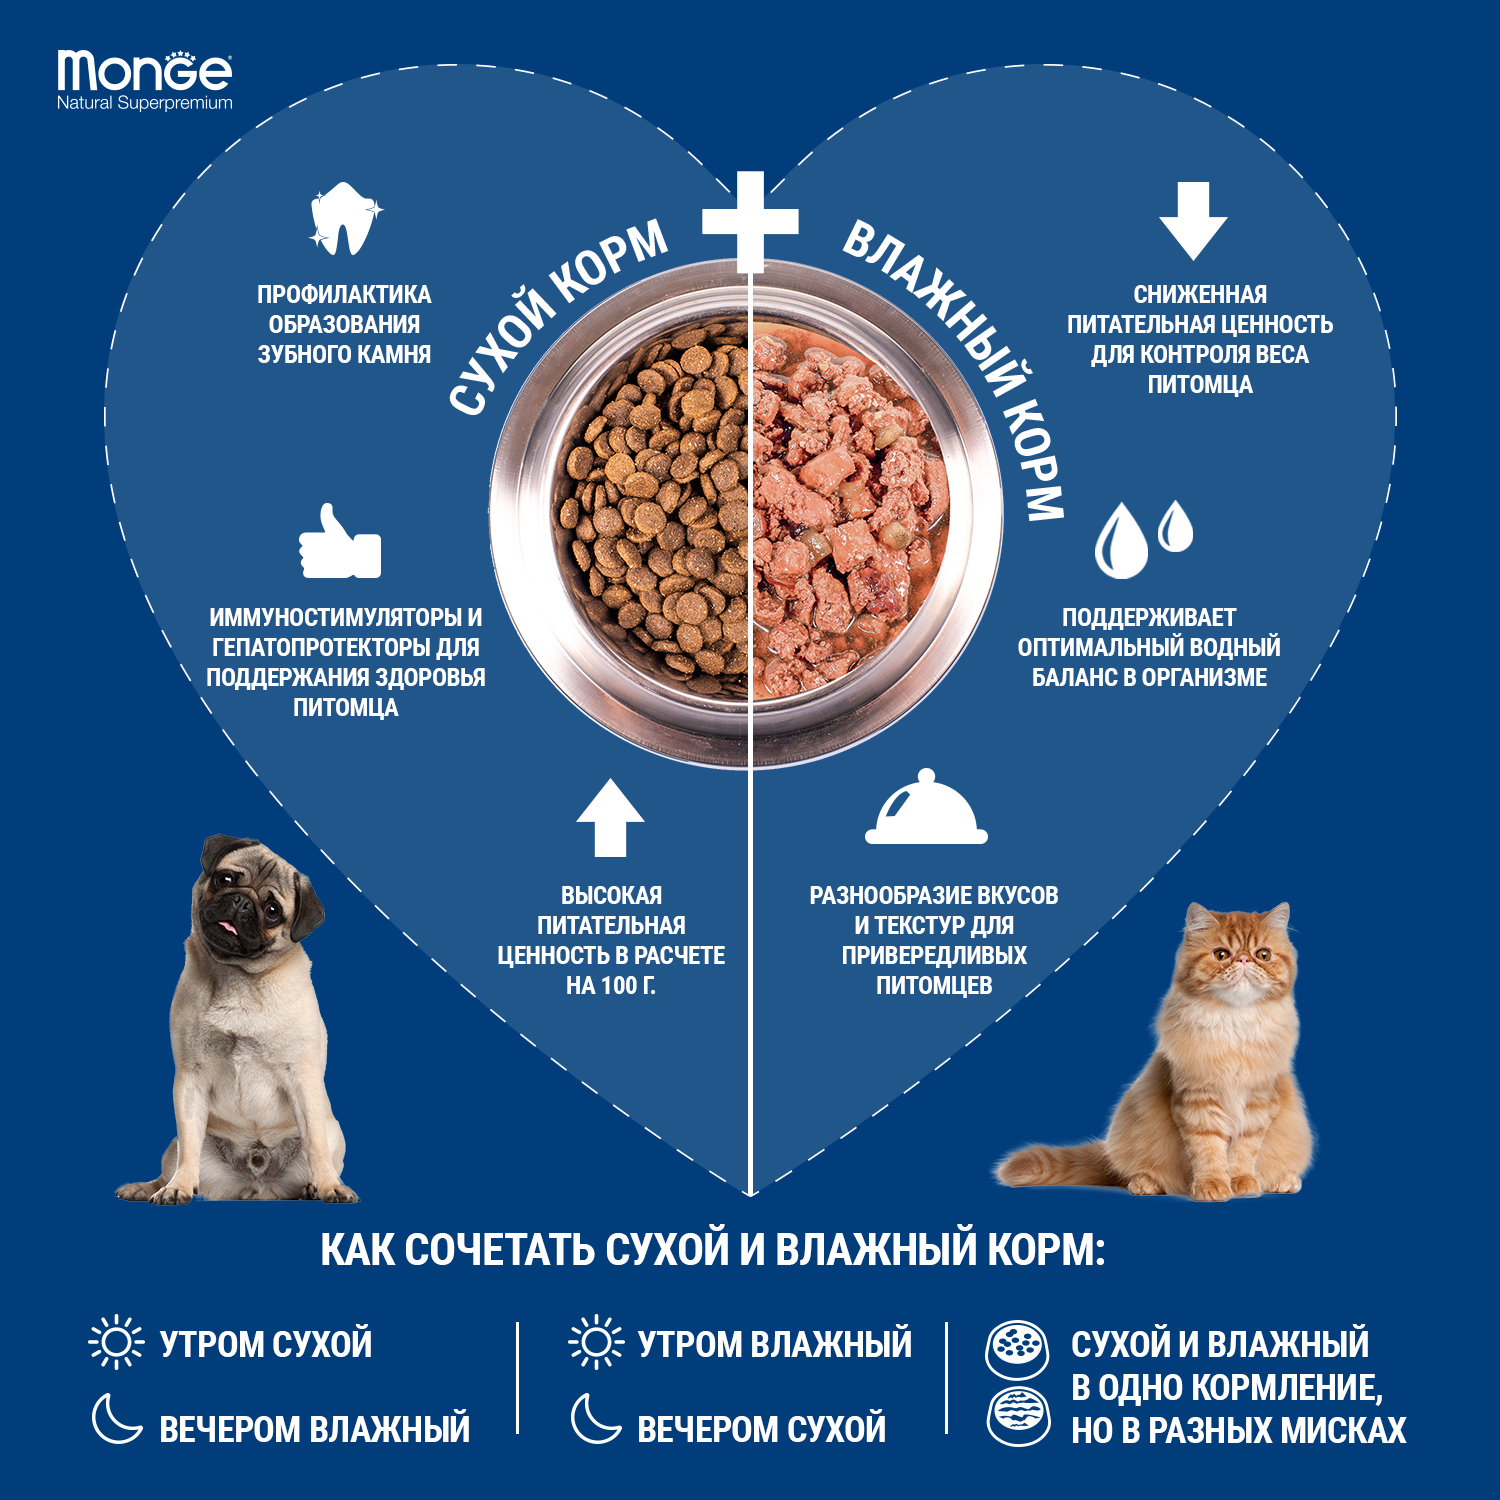 Сухой корм Monge Dog Speciality Line Monoprotein All Breeds Beef and Rice для взрослых собак всех пород, из говядины с рисом 12 кг